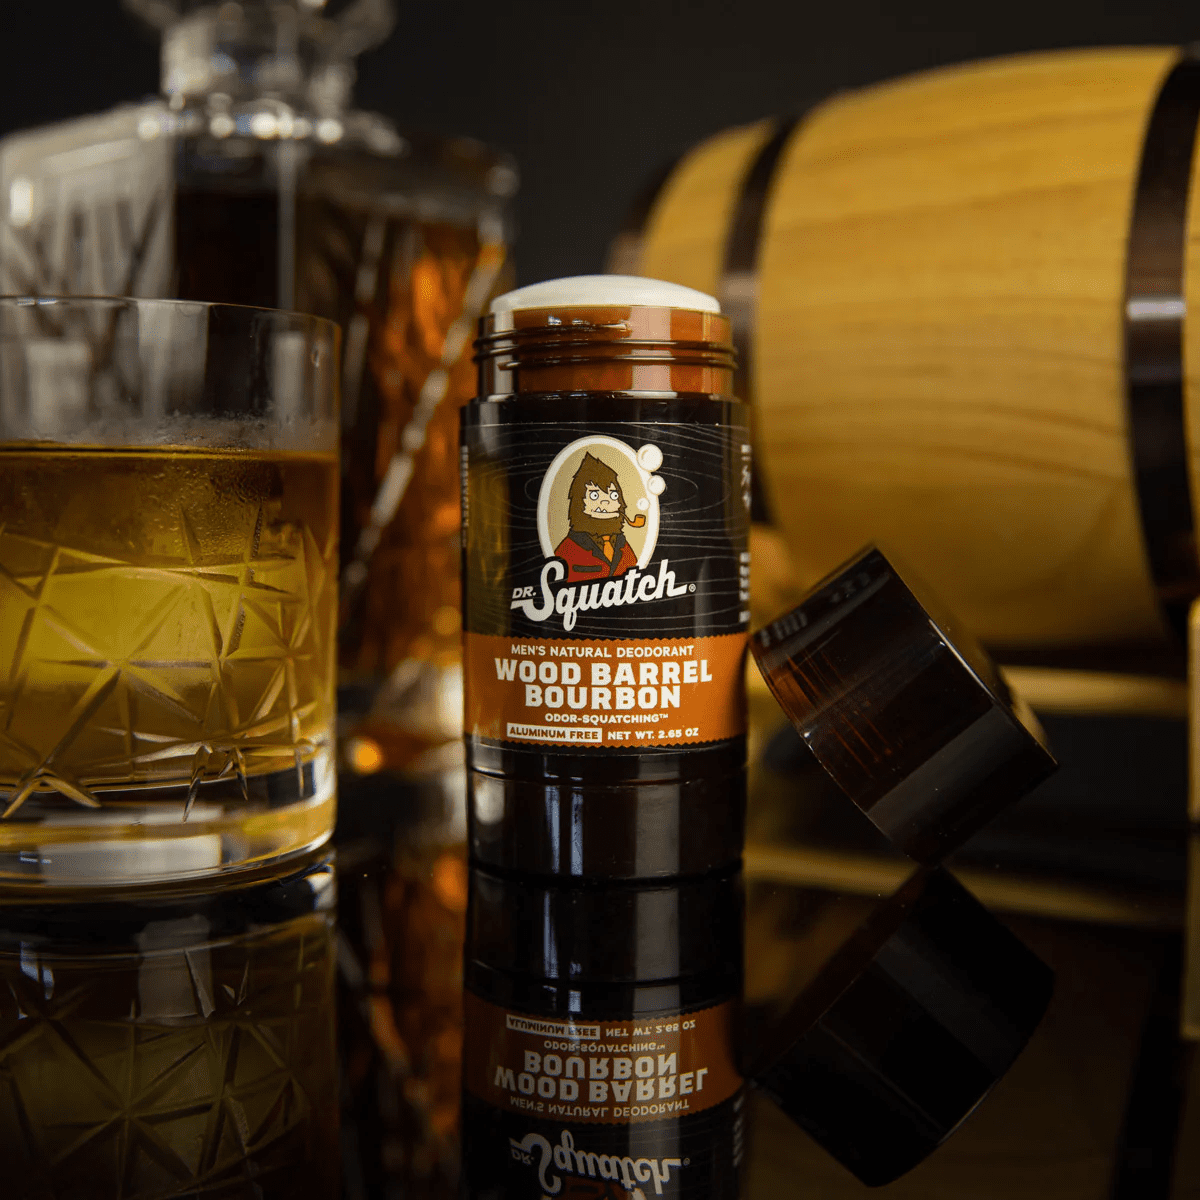 Dr. Squatch Wood Barrel Bourbon Holiday Gift Set, 24 oz - Kroger